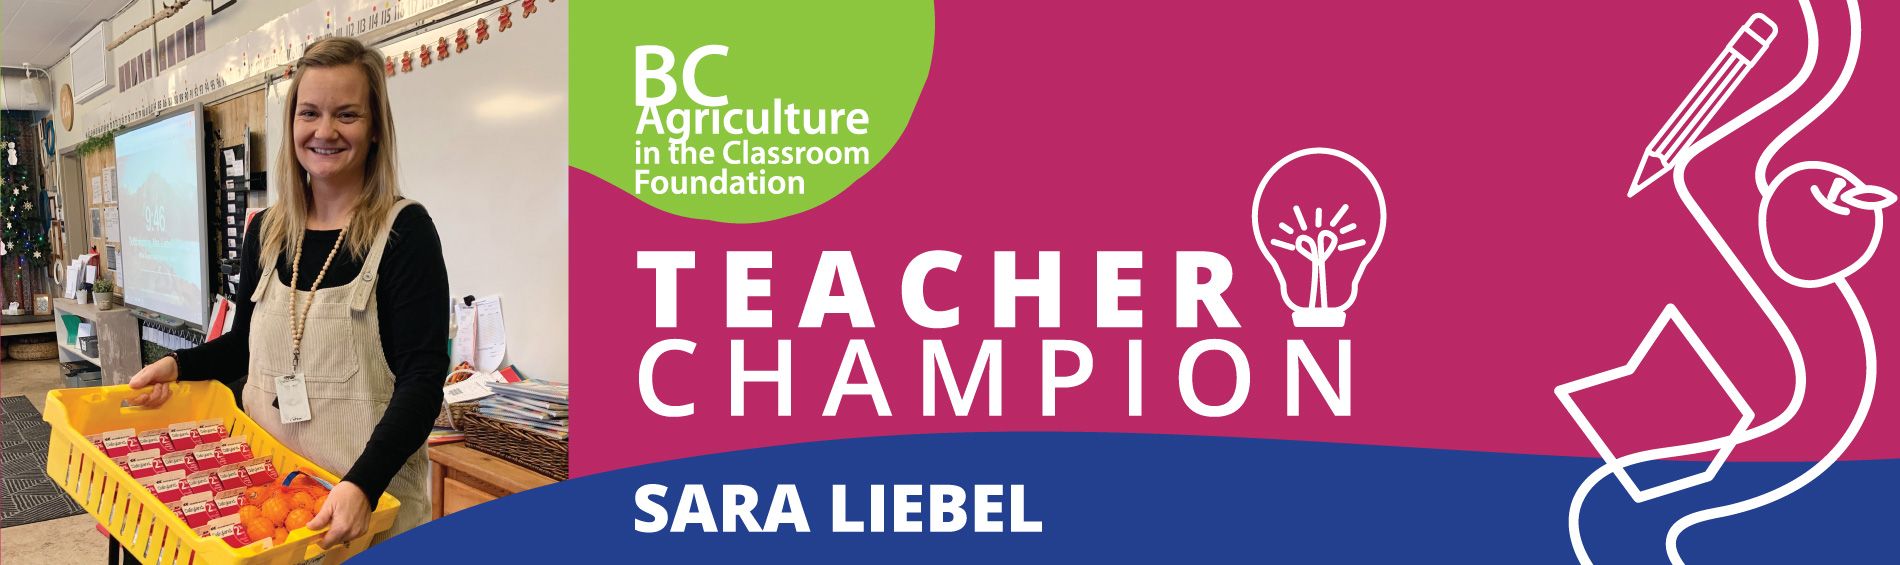 Teacher Champion - Sara Liebel